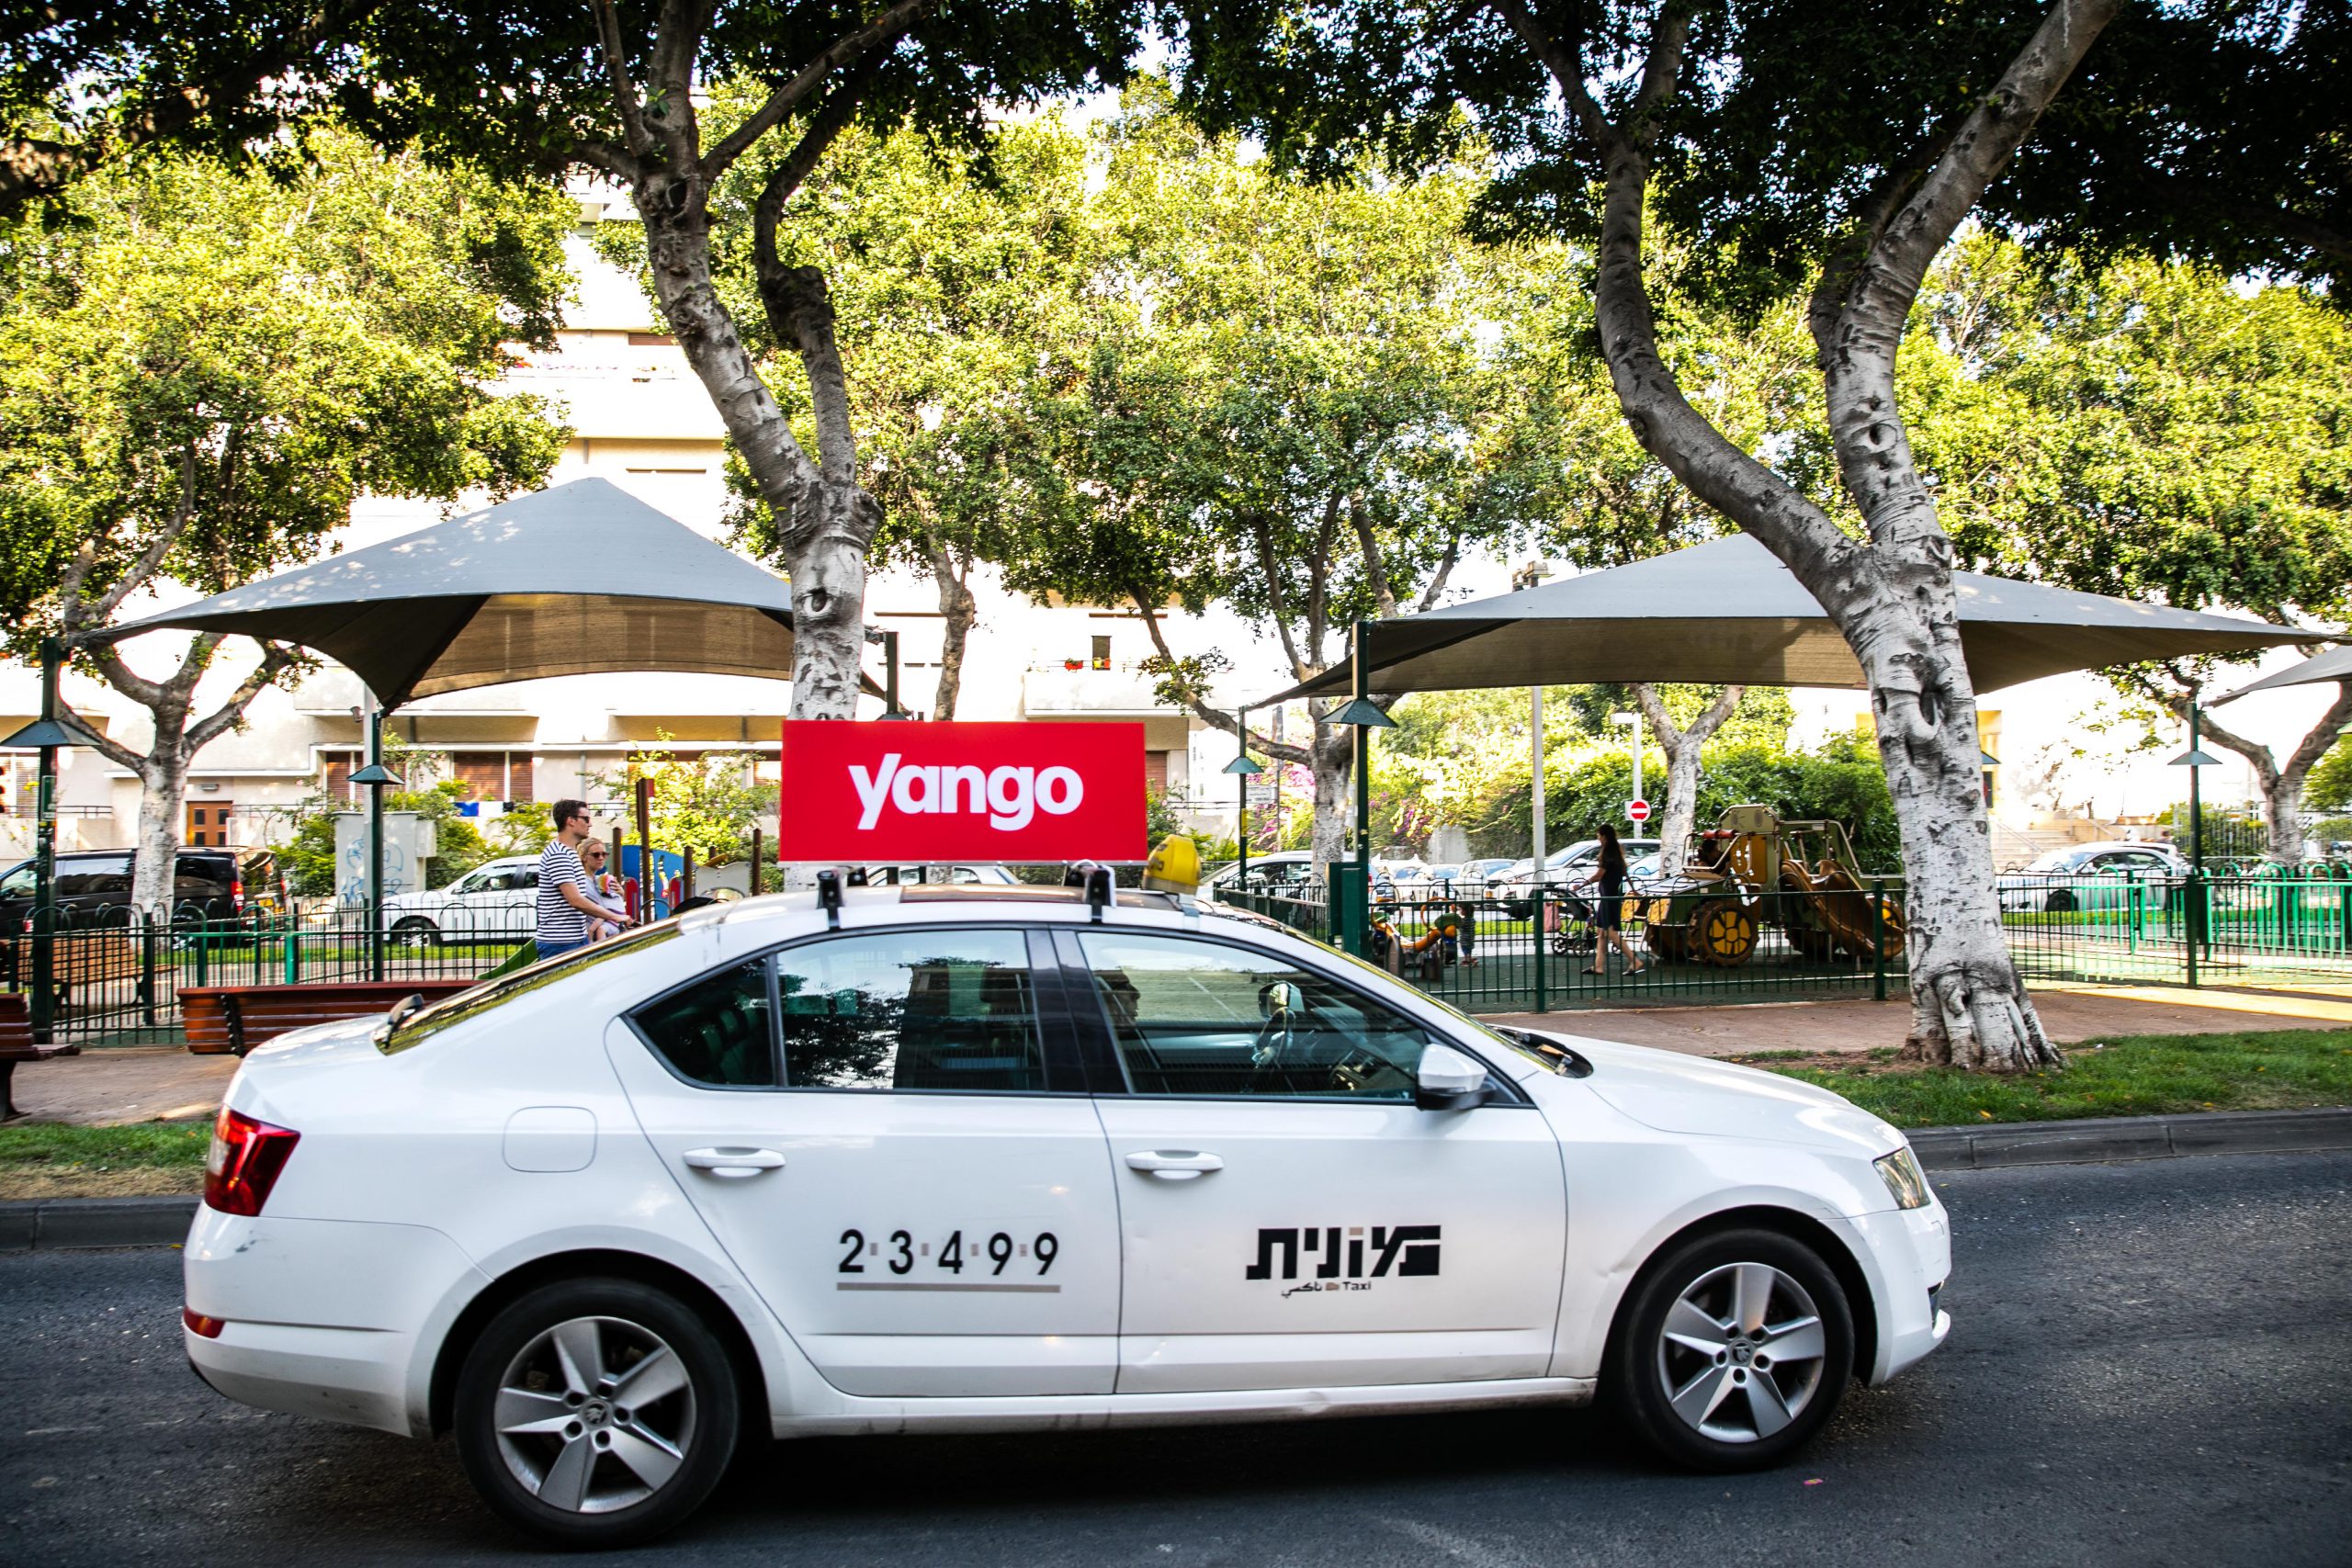 אפליקציית הזמנת המוניות Yango מעמיקה את פעילותה באזור הדרום